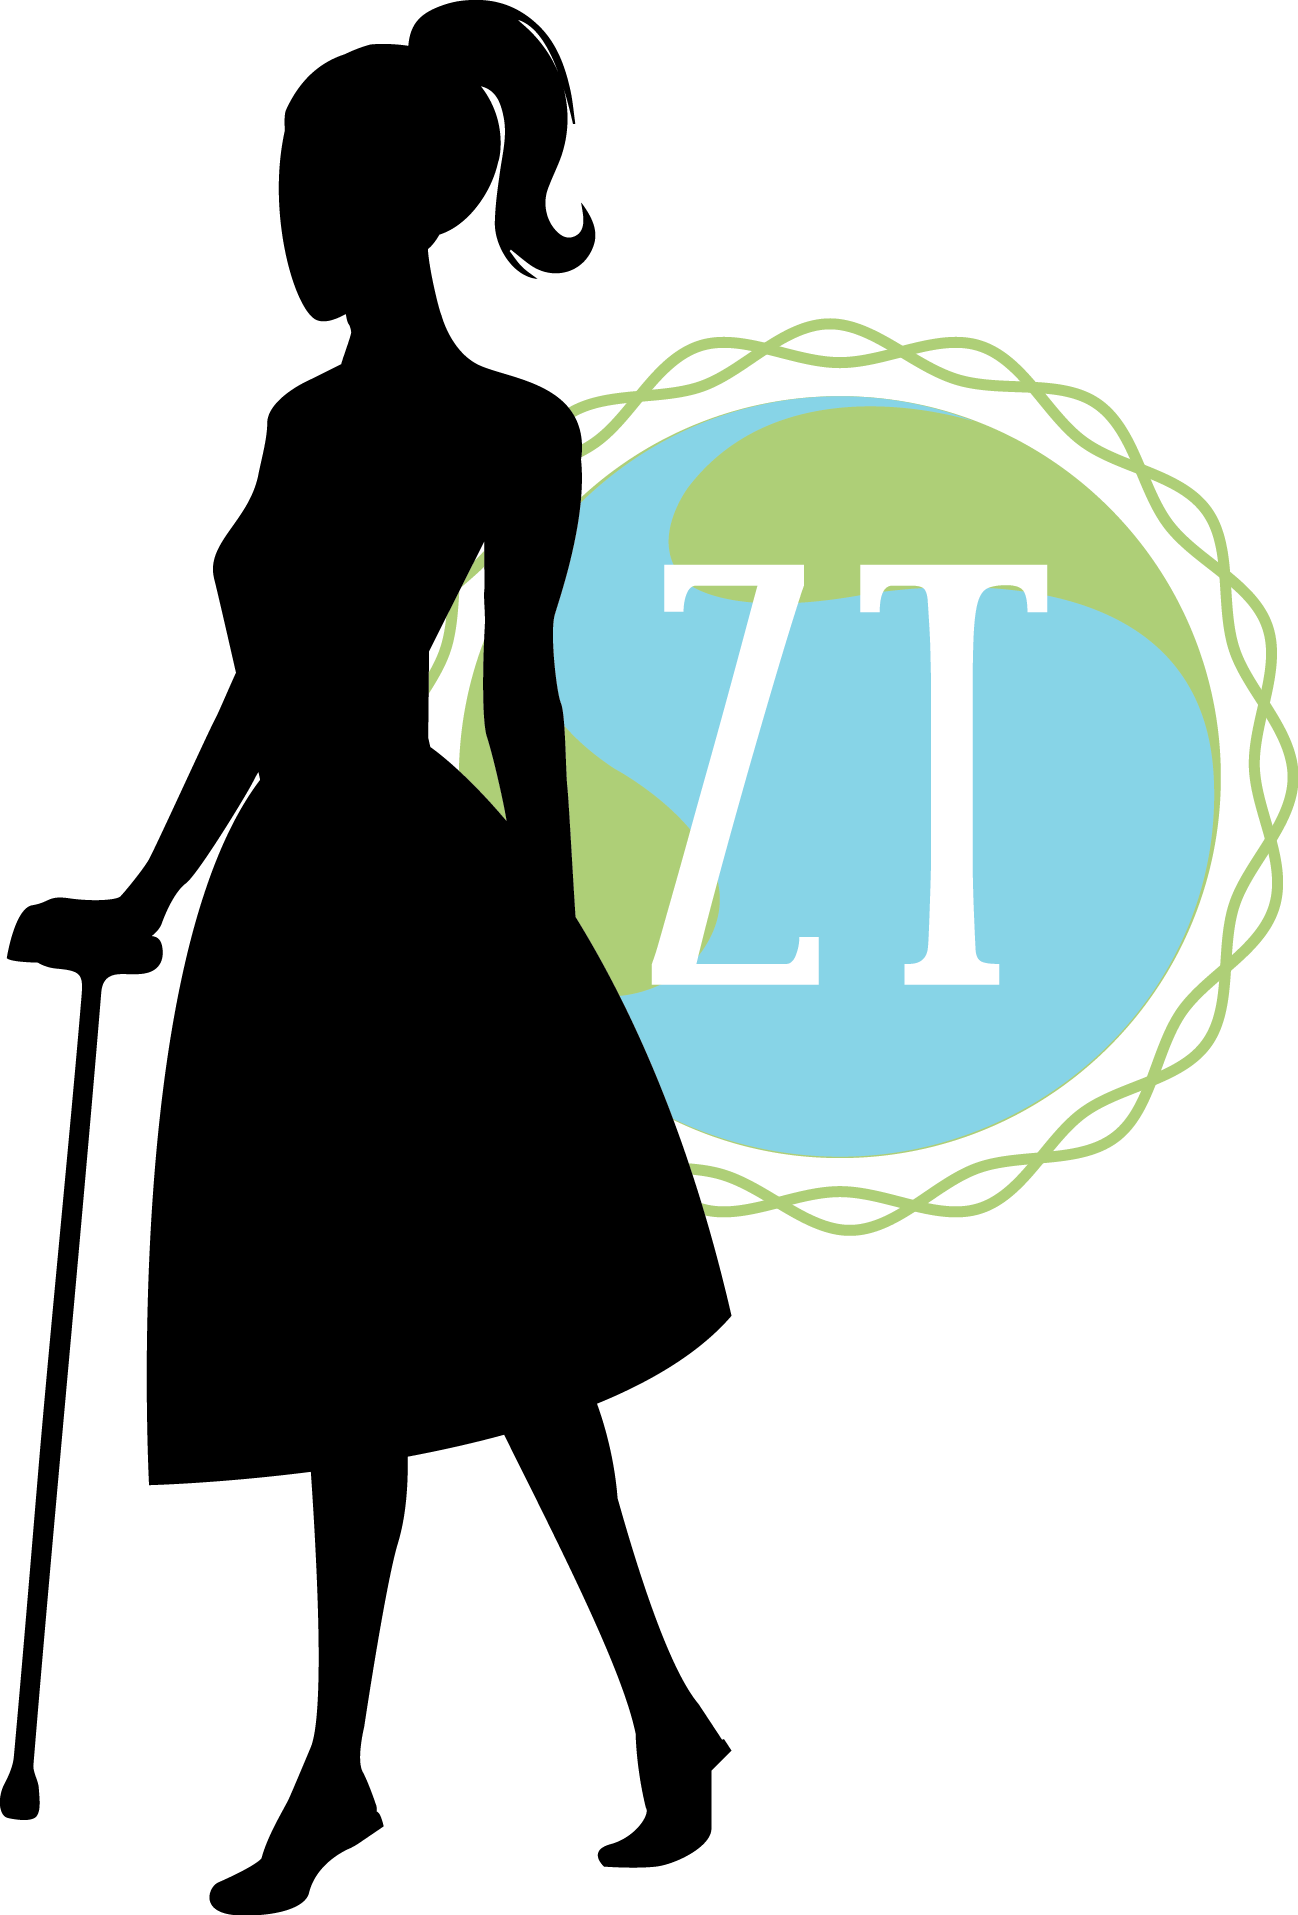 ZT Logo 02 (1)